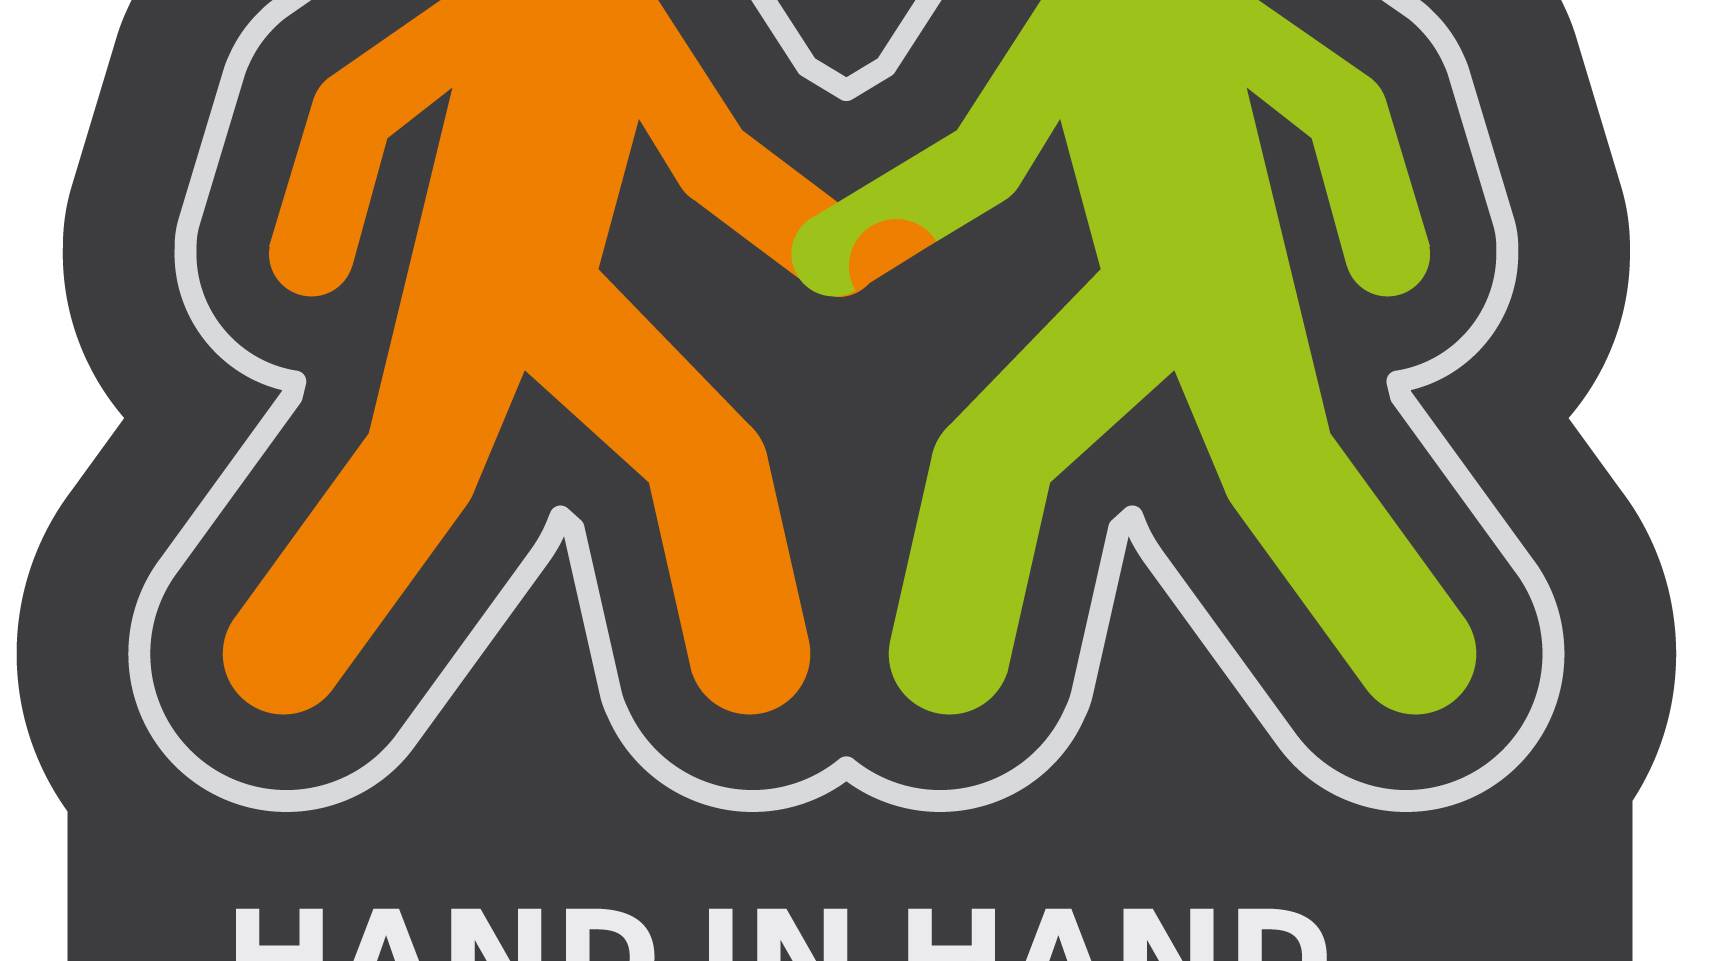 Hand in Hand: Aktion für Toleranz im Strassenverkehr